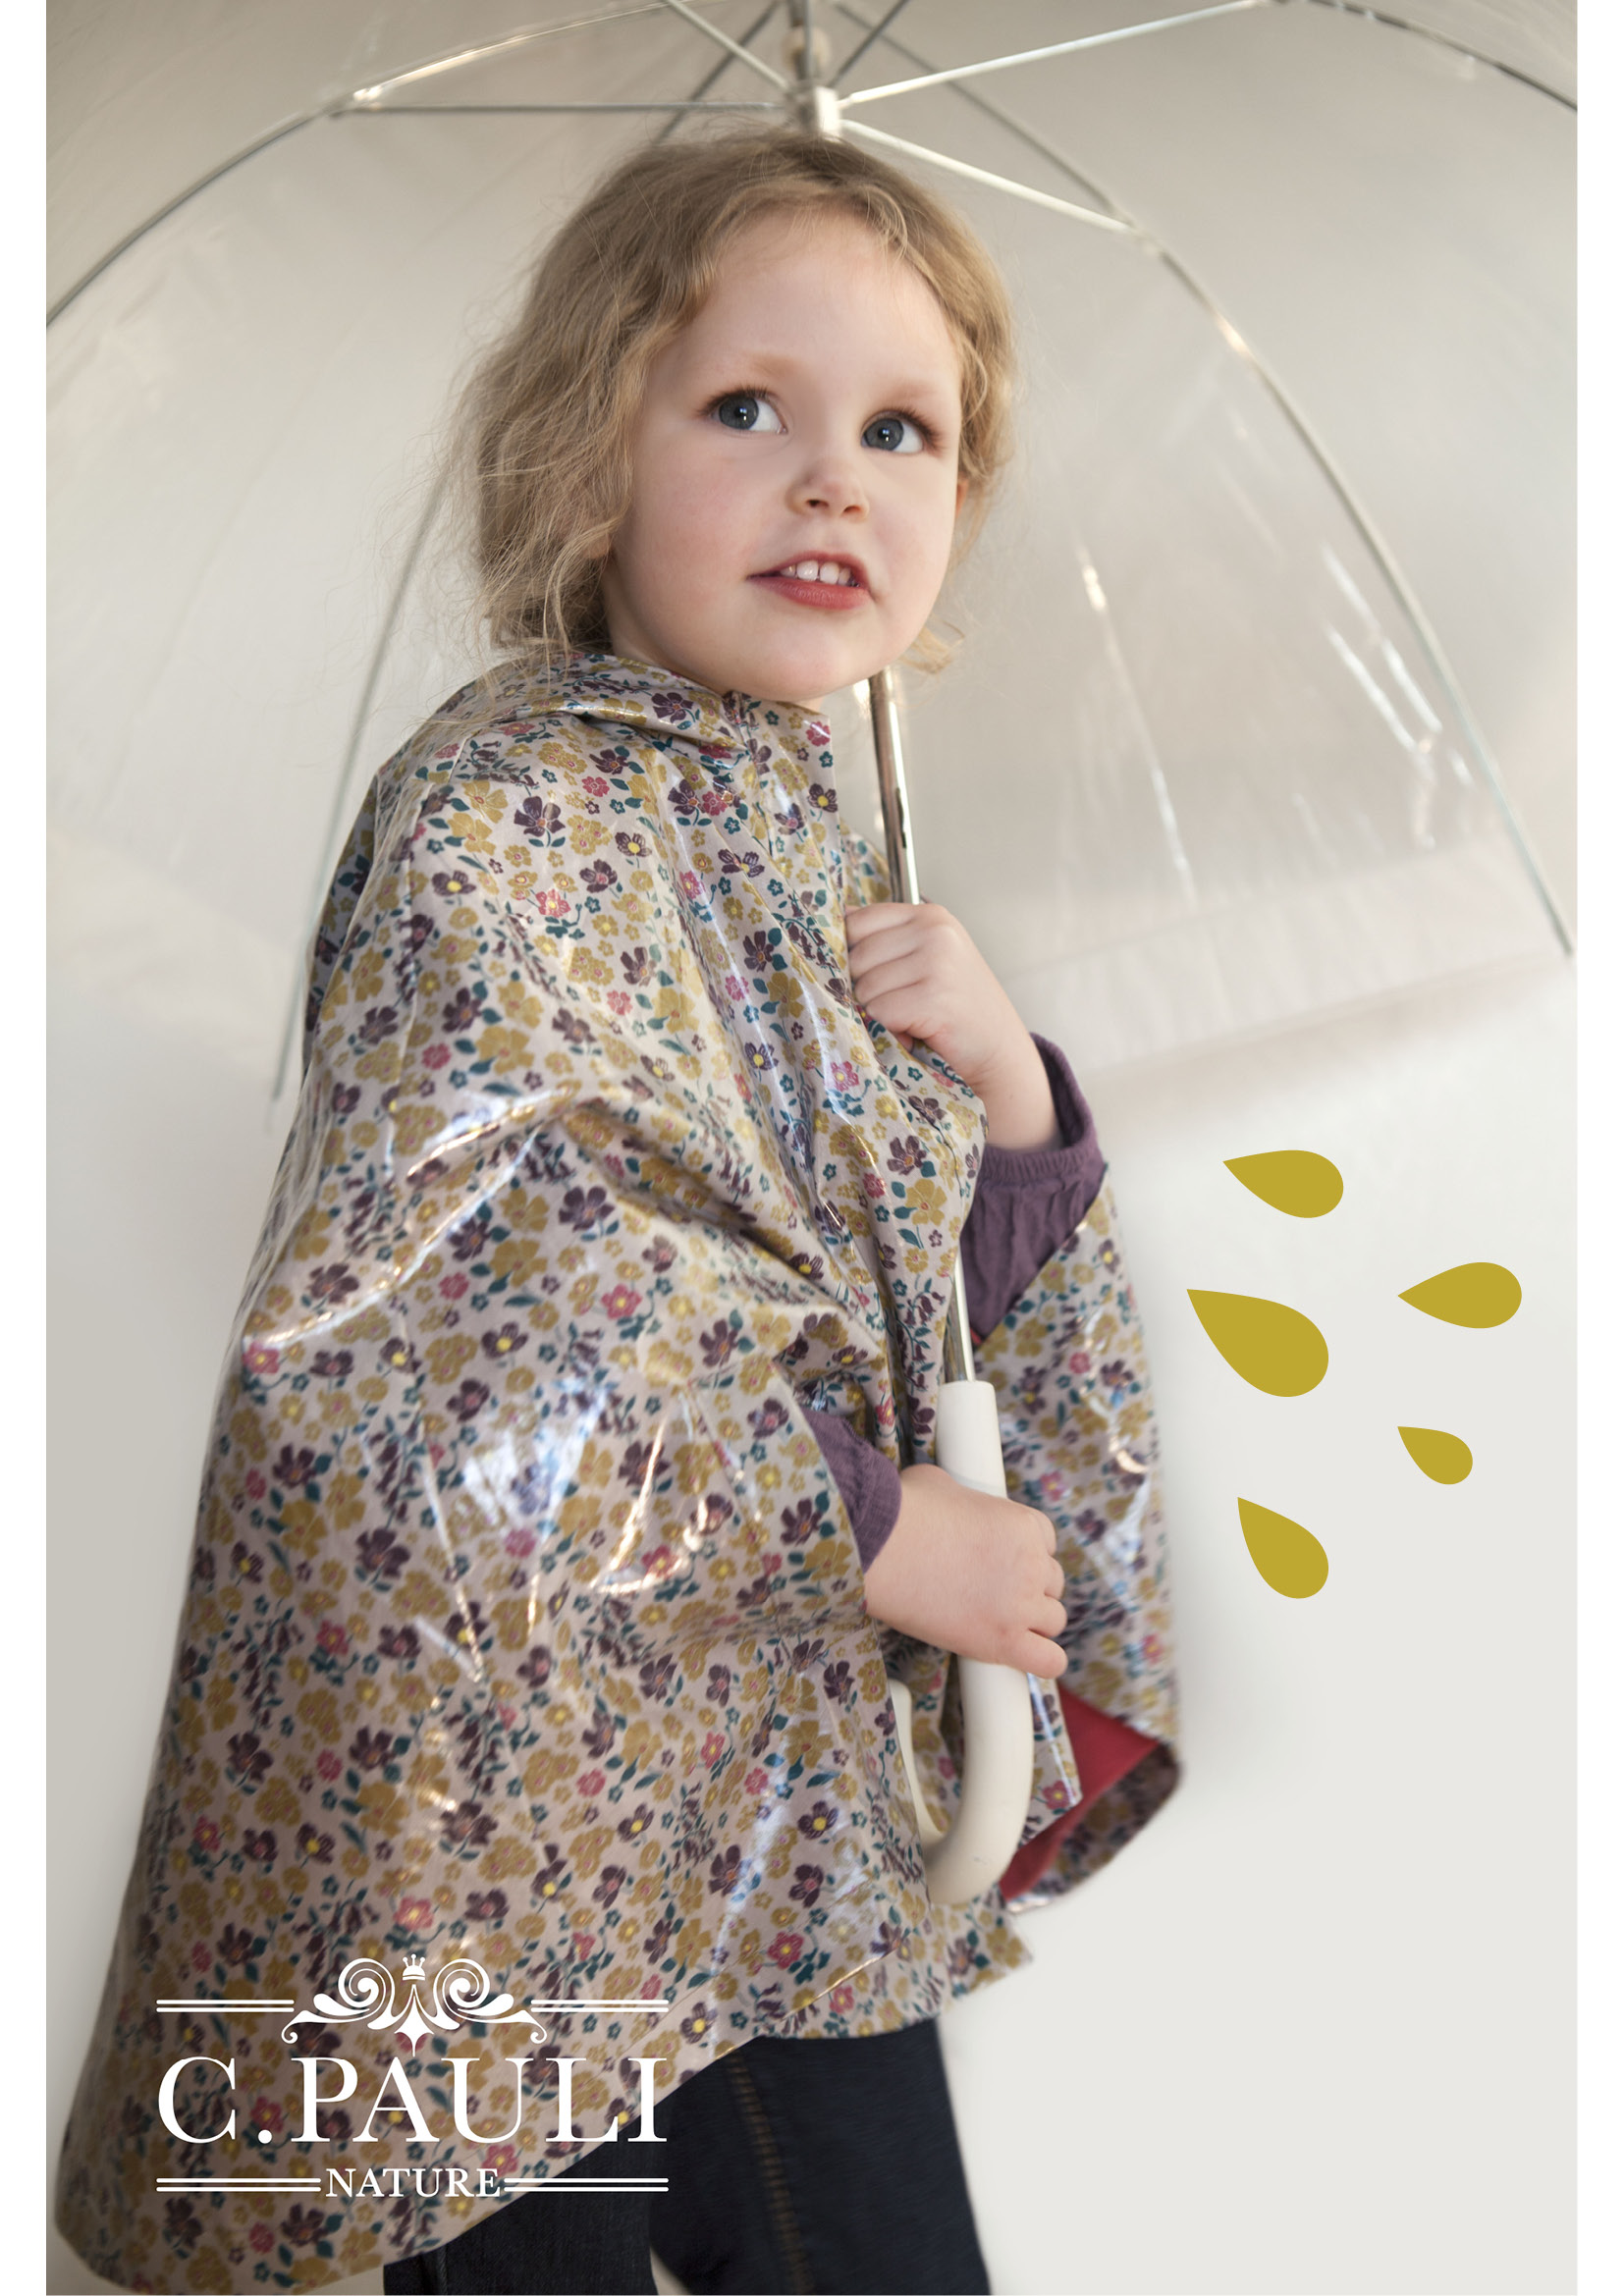 Kinder-Regencape aus beschichteter Baumwolle kostenlosem Schnitt und Anleitung | C.Pauli Nature Blog